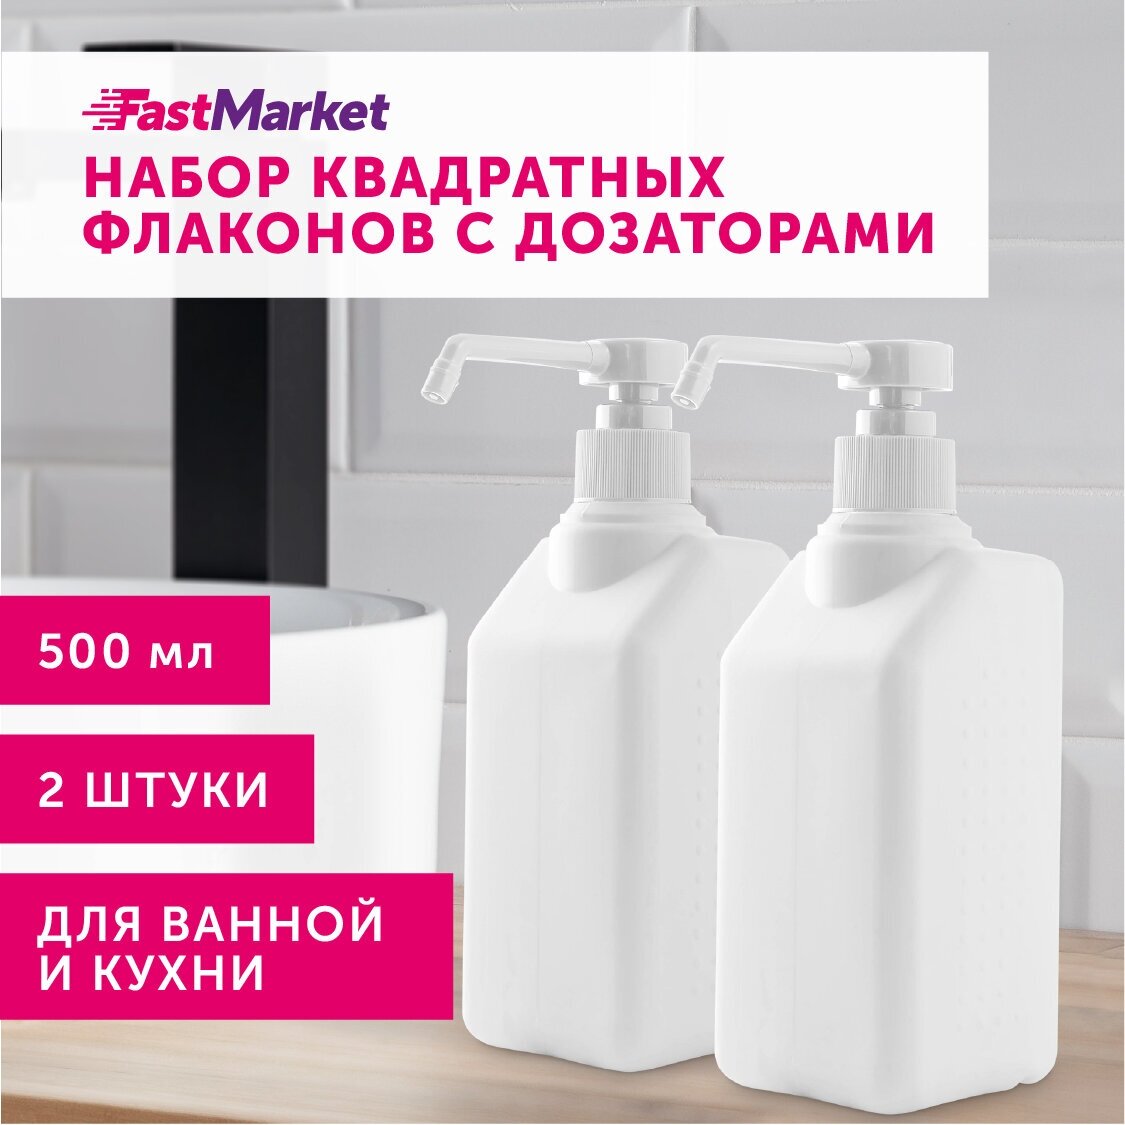 Дозаторы FastMarket для жидкого мыла, моющего средства, для кухни, набор 2 шт по 500 мл